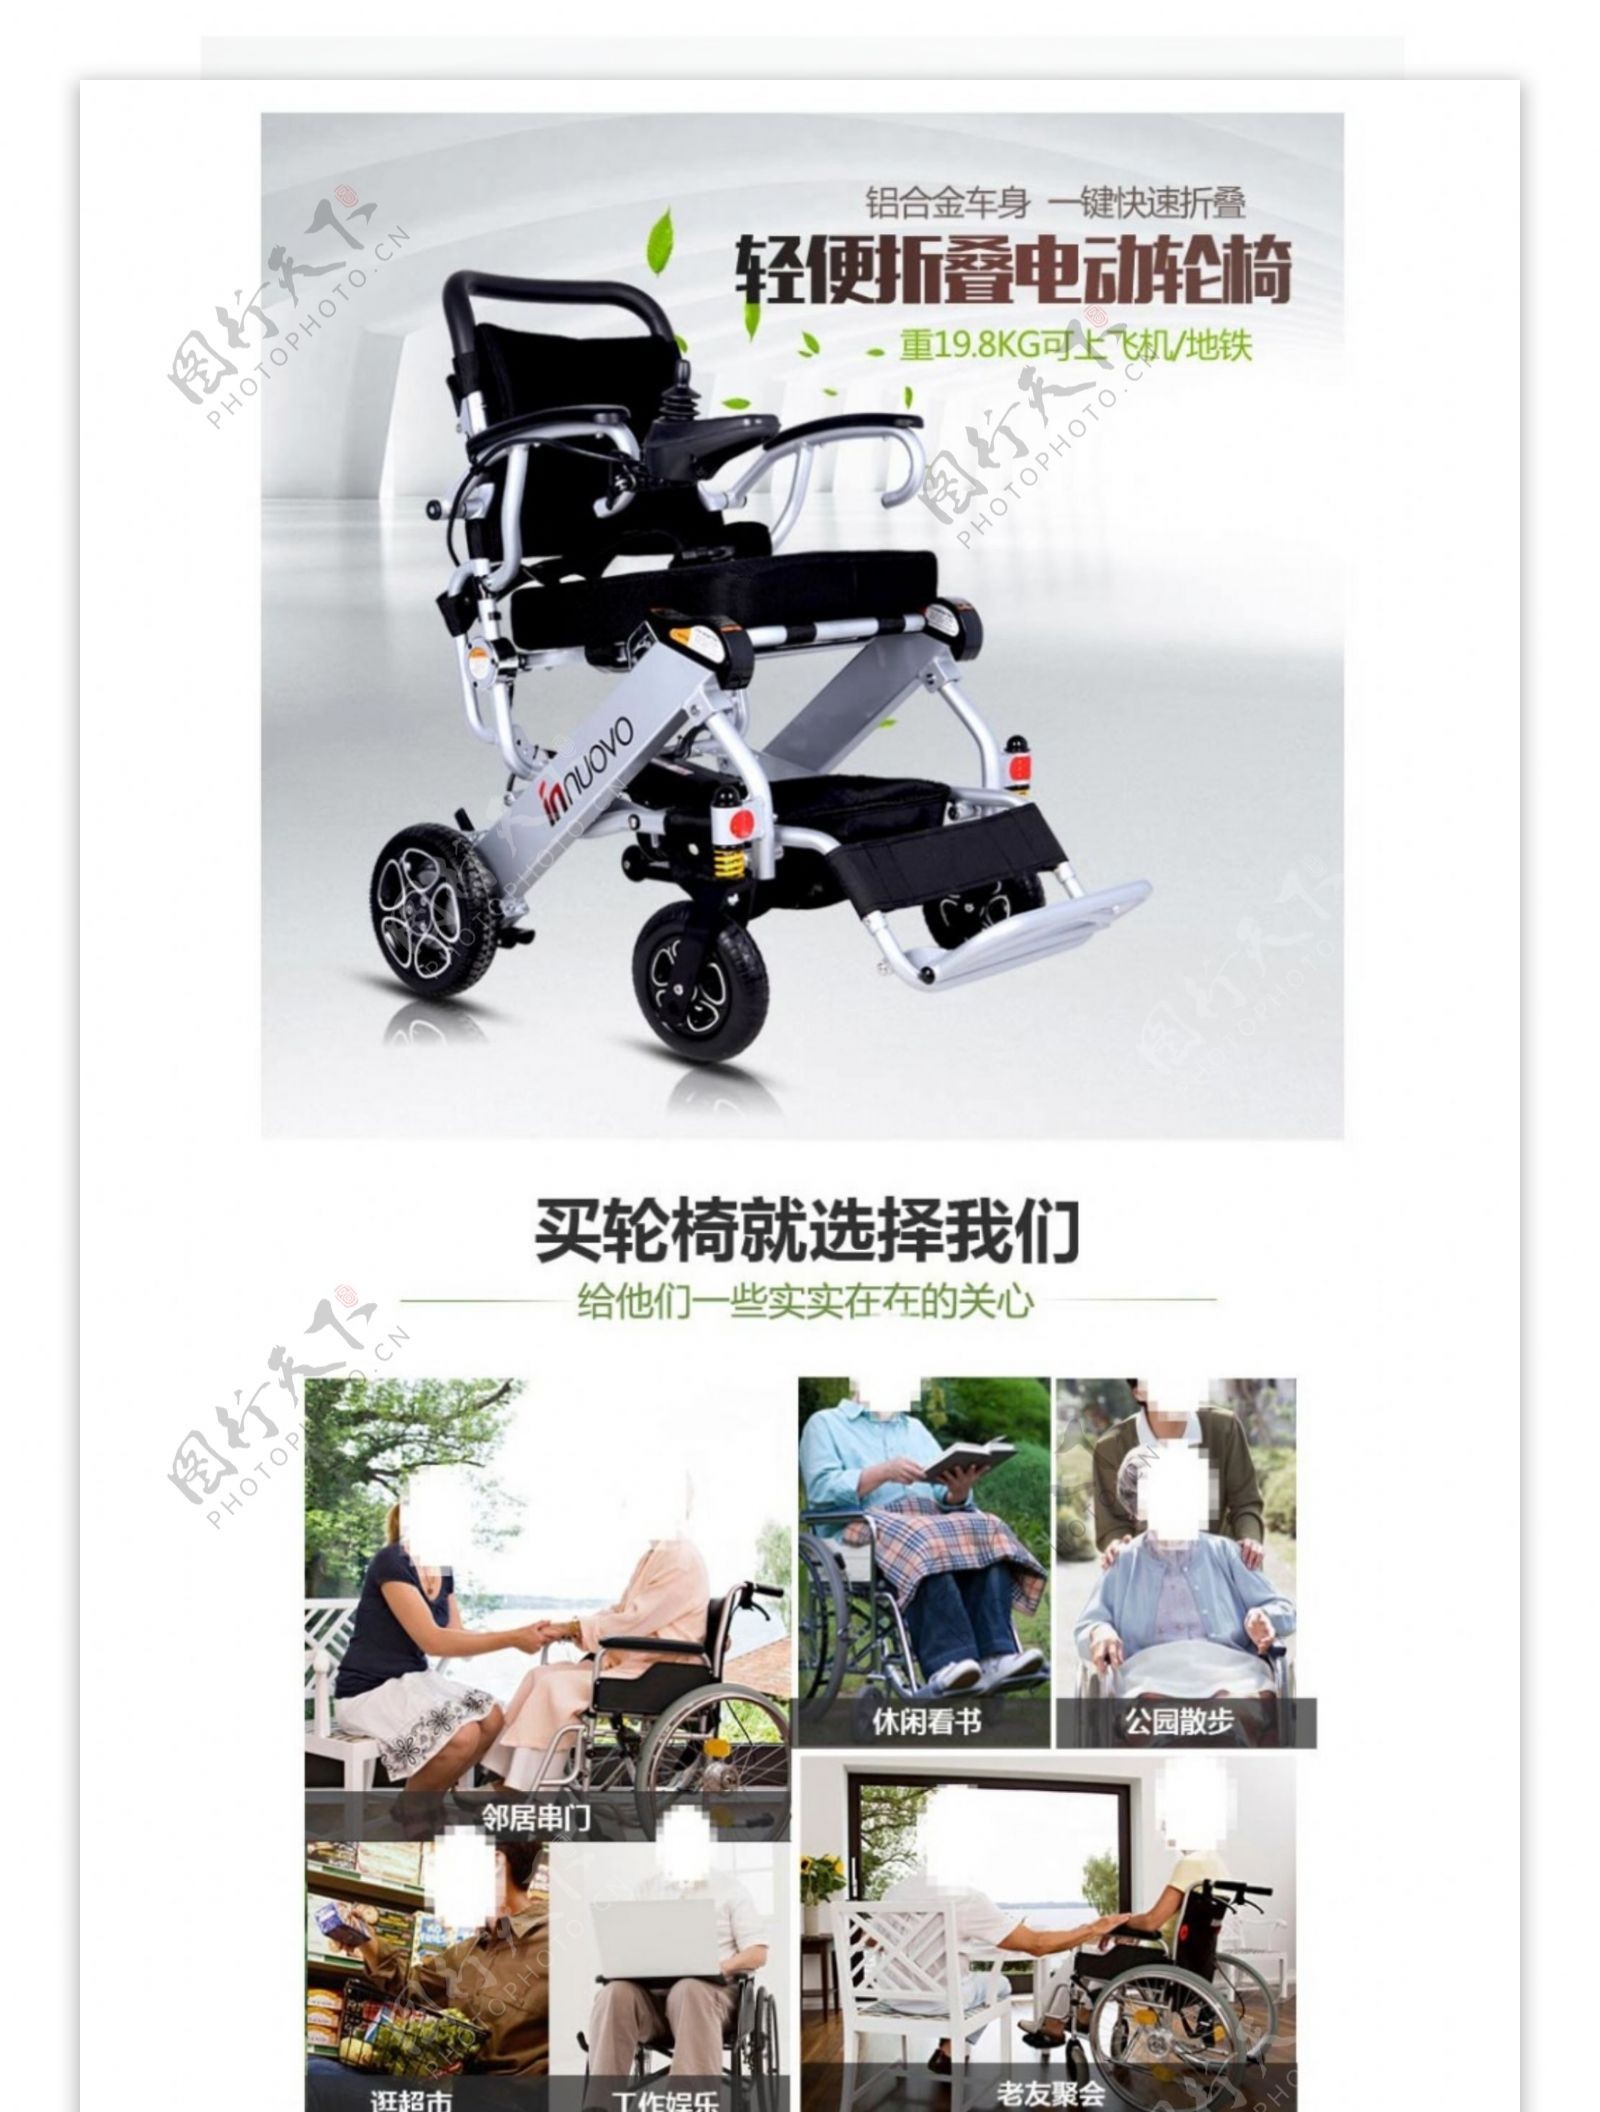 天猫淘宝京东电动轮椅详情模板描述PSD